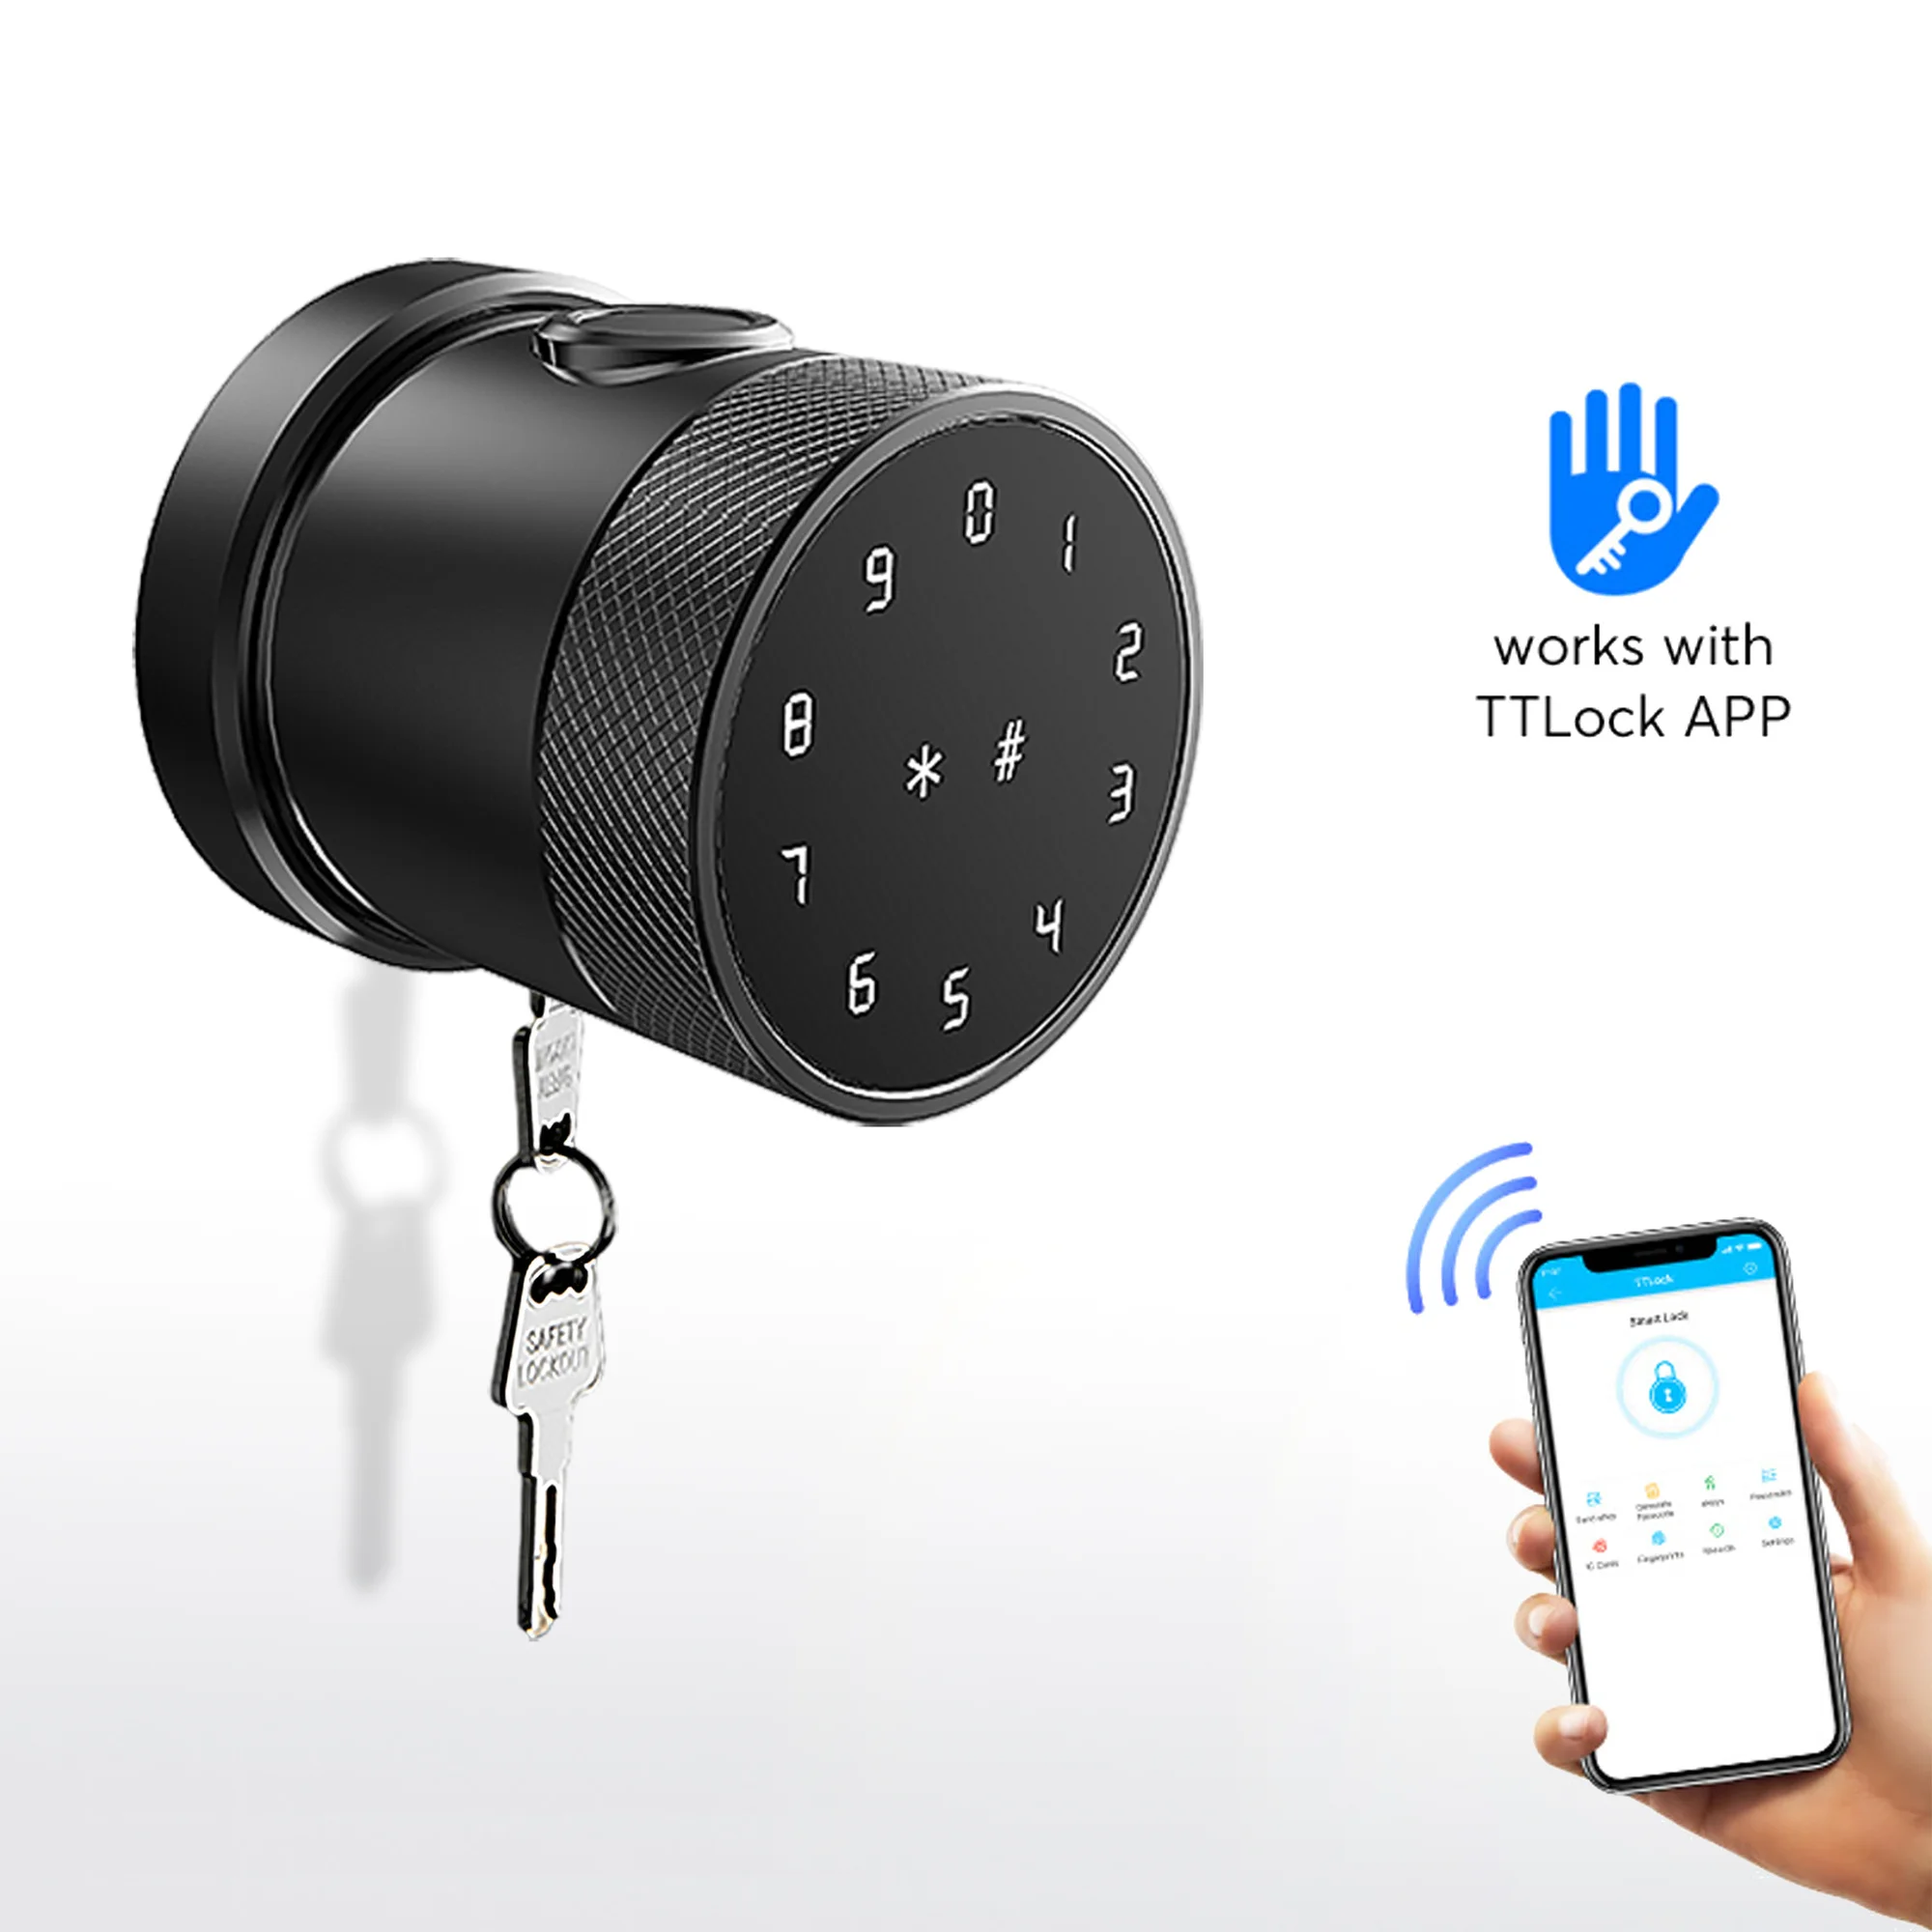 

Дверной замок электронный с Биометрическим распознаванием отпечатков пальцев, Интеллектуальный код, Wi-Fi, Ttlock